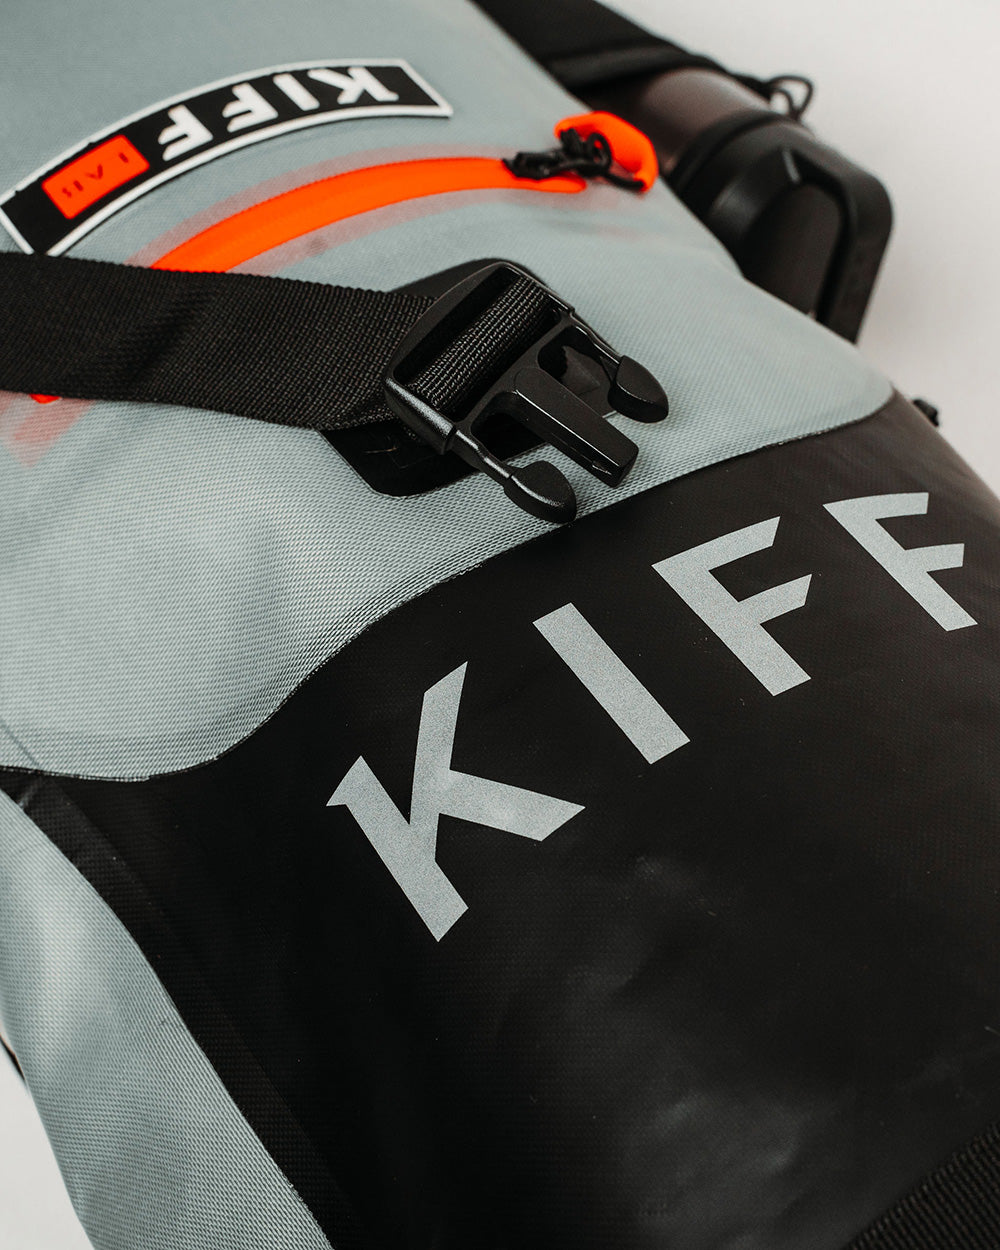 Kiff waterproof bag